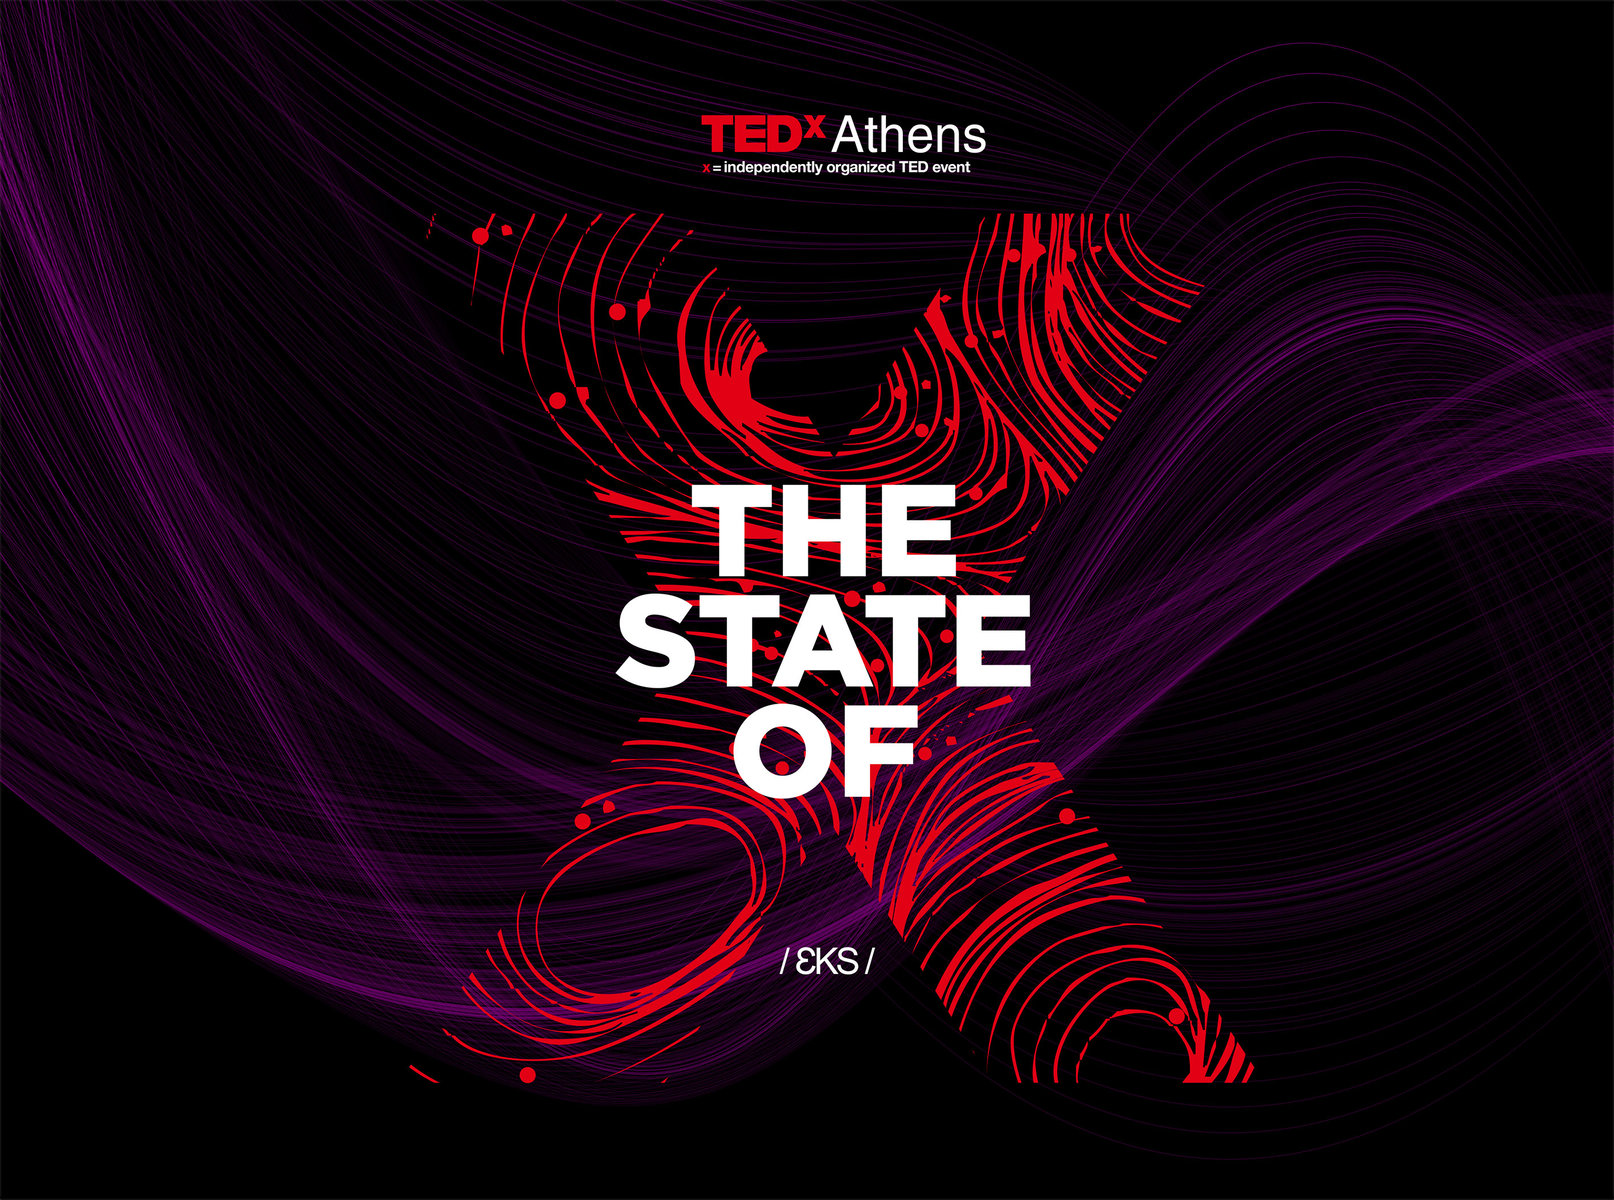 Το TEDxAthens επιστρέφει και σας καλεί σε ένα ταξίδι μοναδικής αναζήτησης